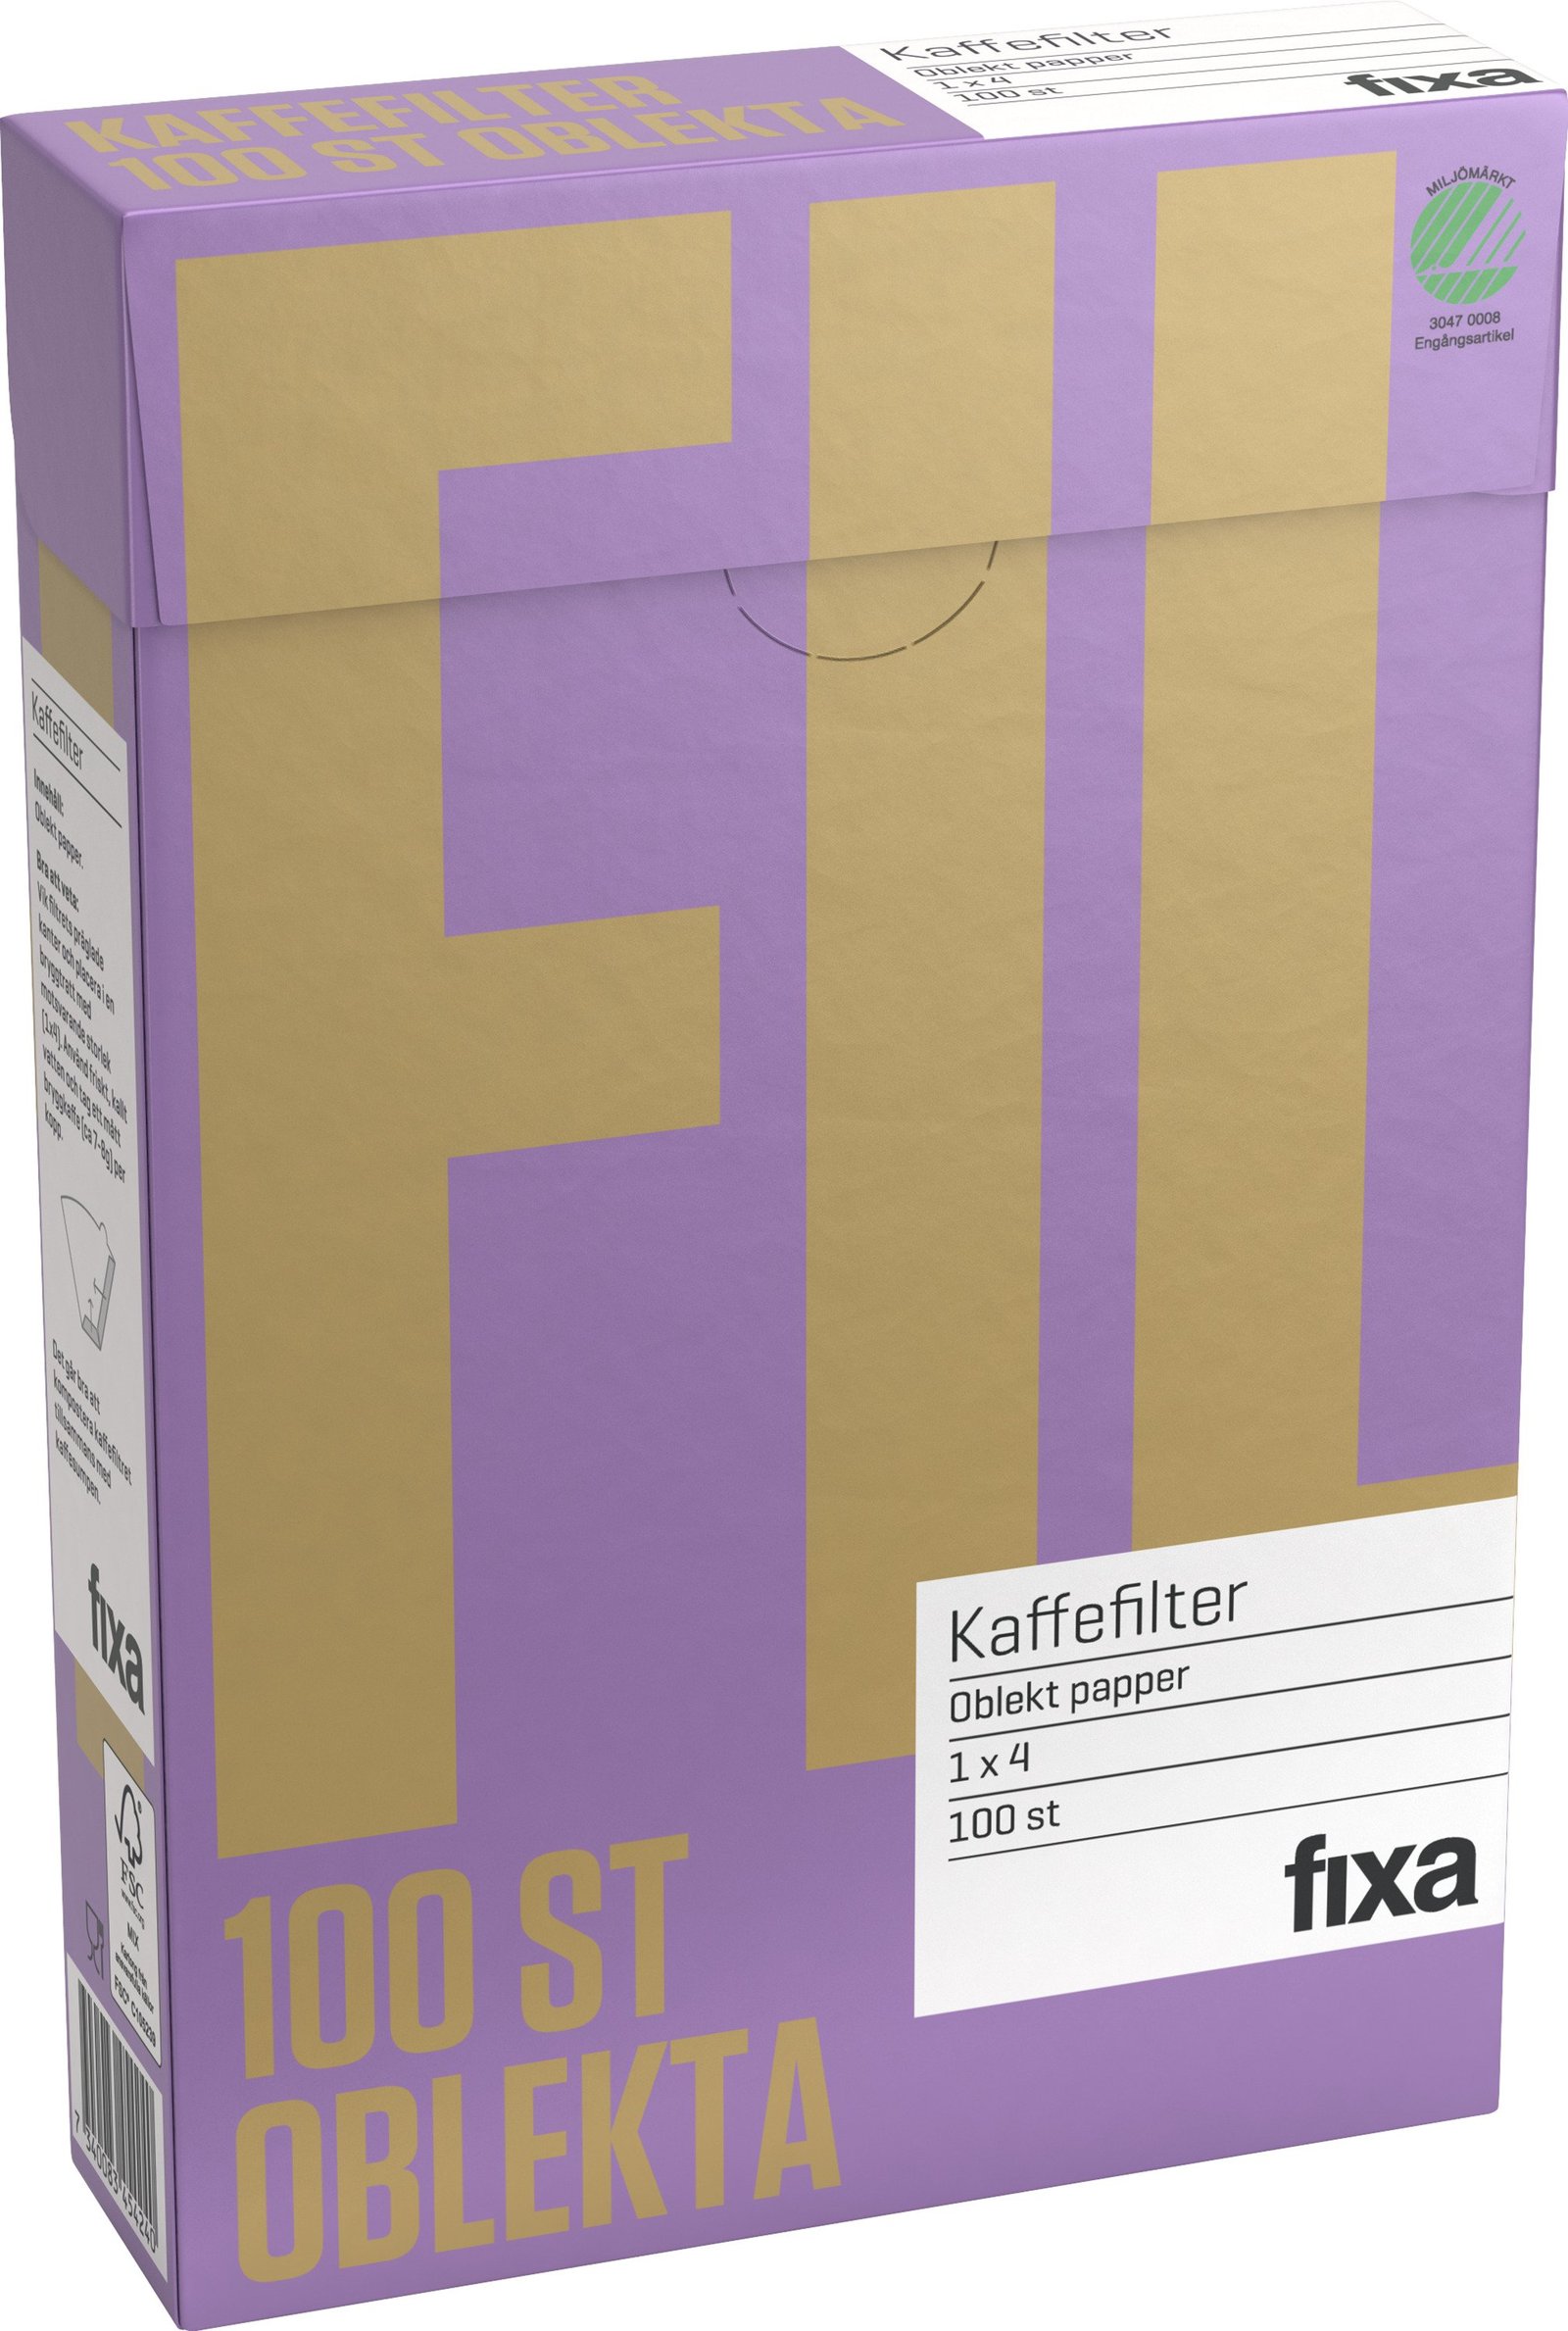 Fixa Kaffefilter Oblekta (1 x4) 100 st